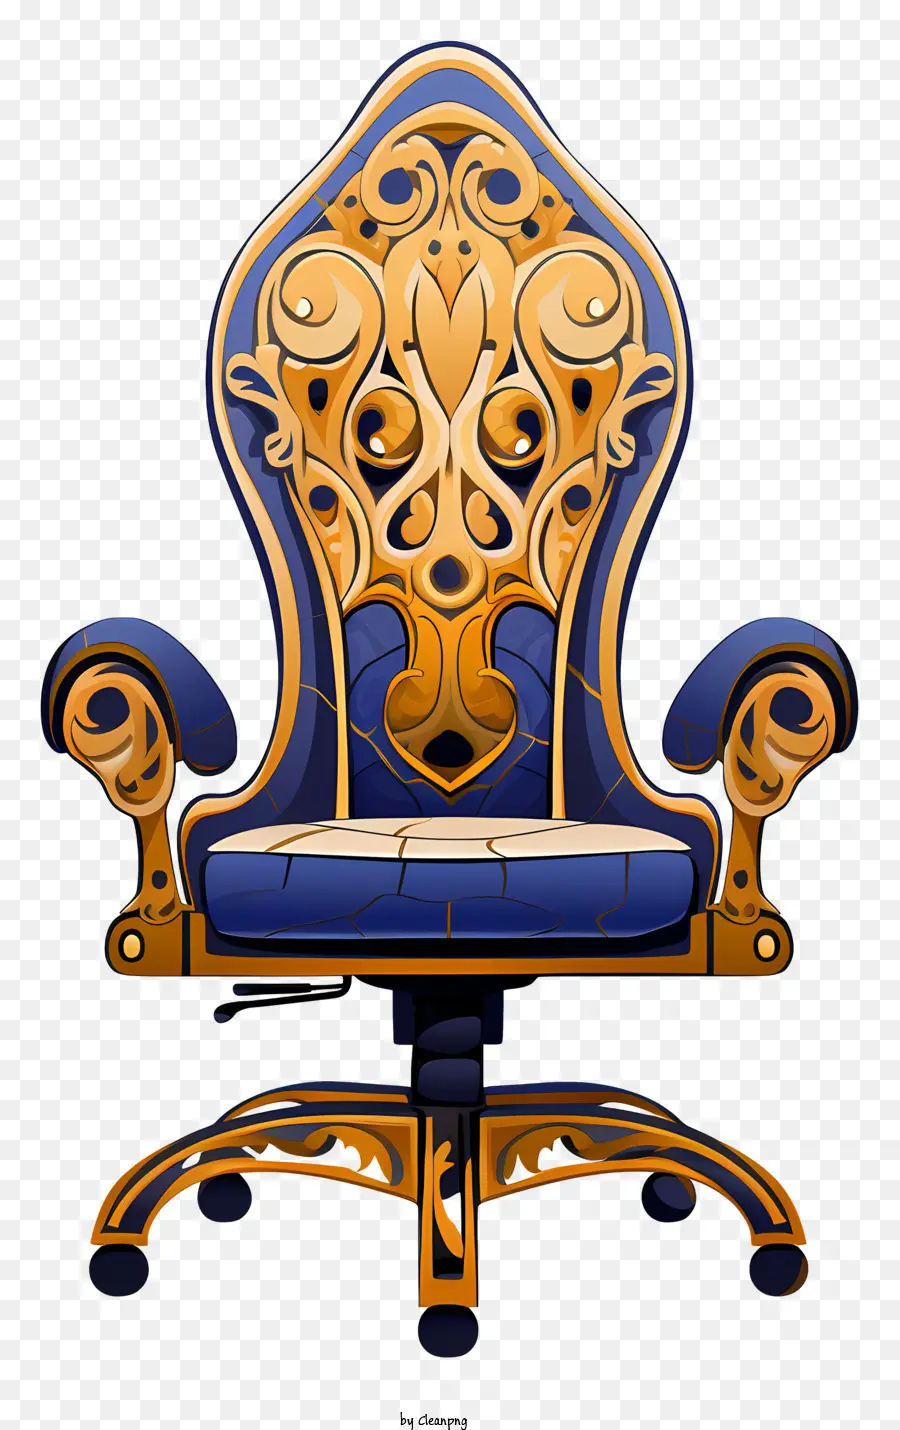 hoa mẫu - Thiết kế ghế màu xanh và vàng sang trọng, trang trí công phu